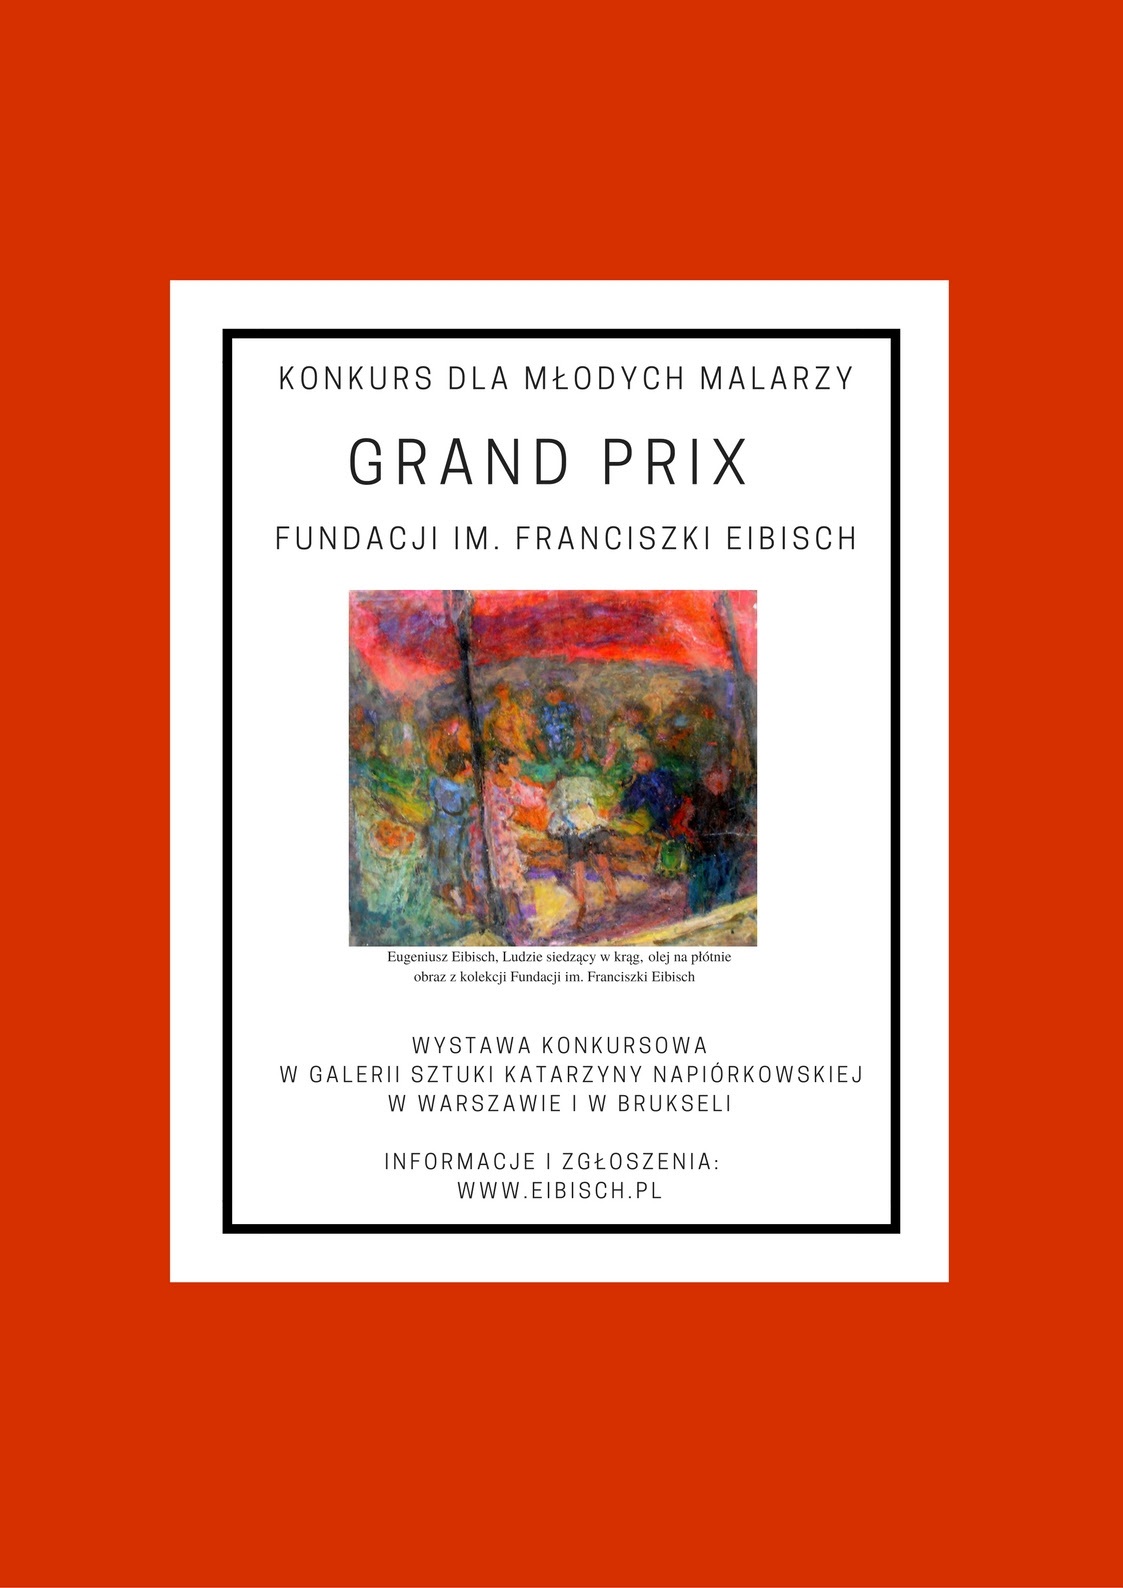 Konkurs o Grand Prix Fundacji im. Franciszki Eibisch 2017 (źródło: materiały prasowe organizatora)